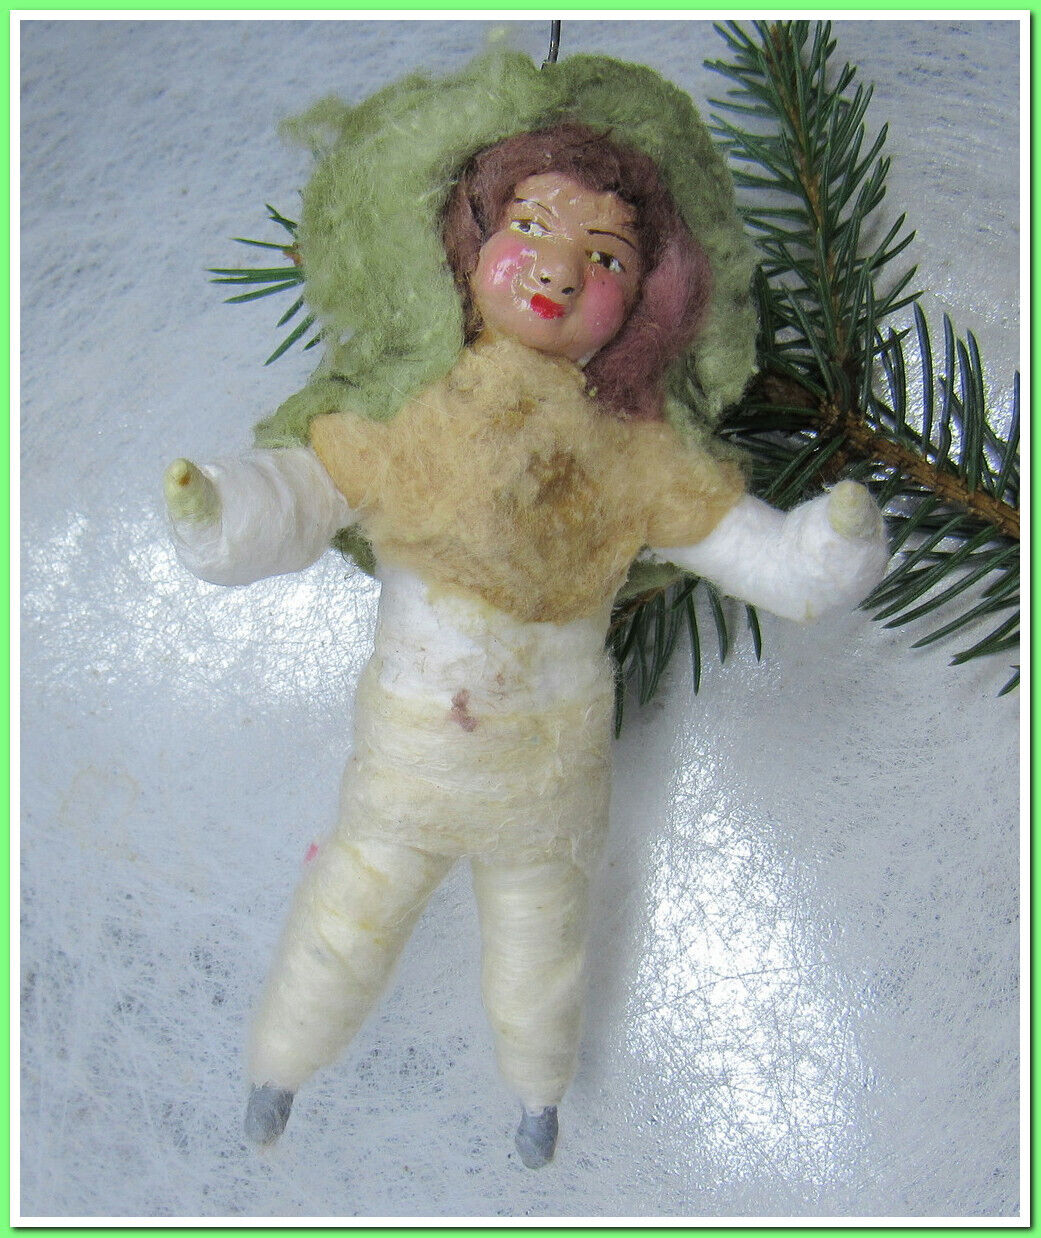 🎄Boy-Vintage antique Christmas German spun cotton ornament figure #81123